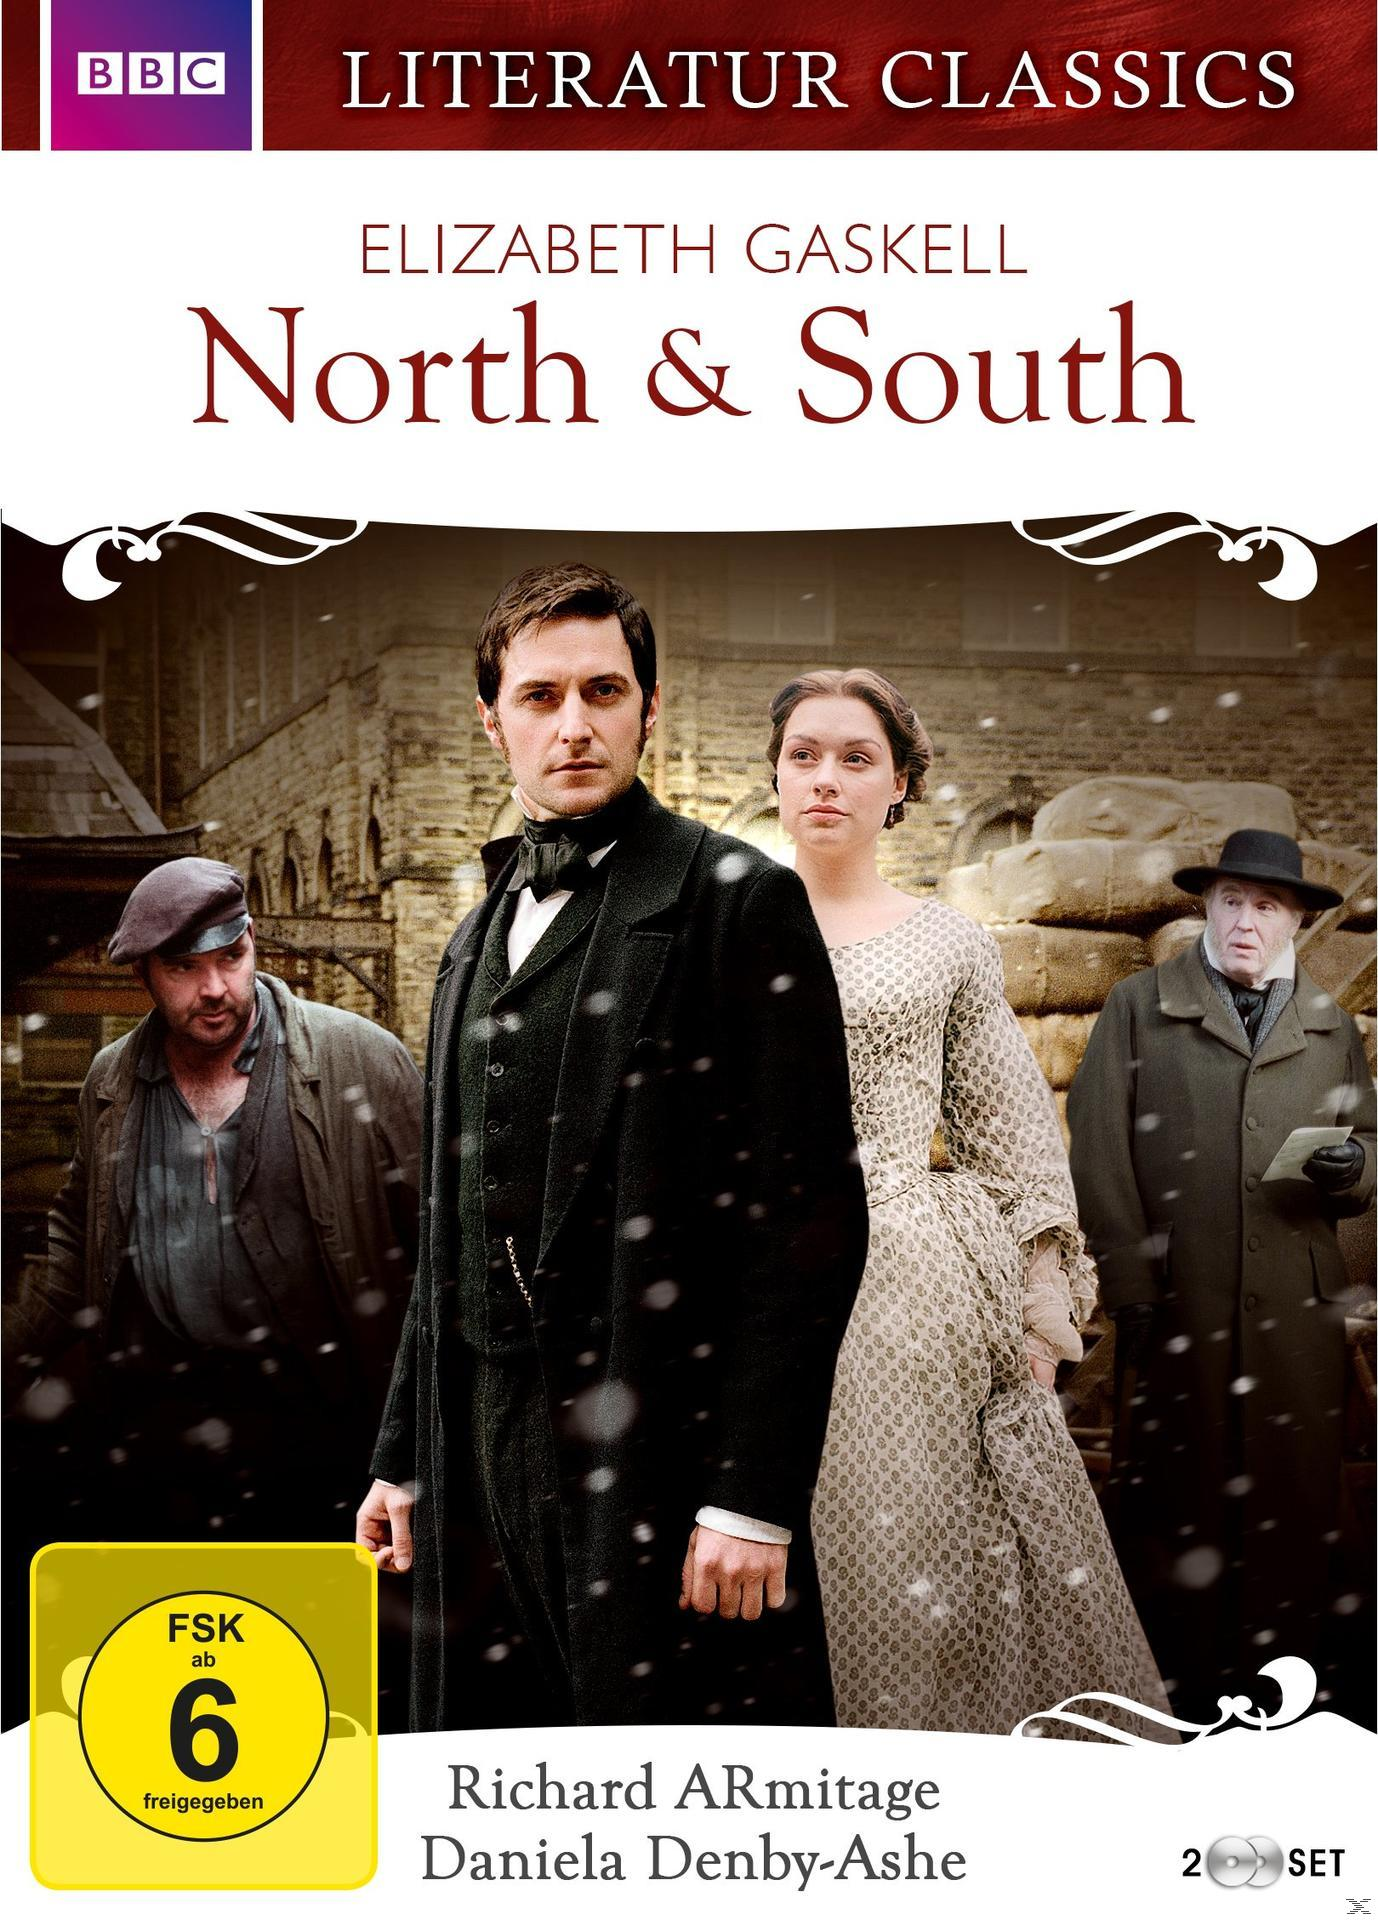 North & South (2004) DVD Gaskell - Elizabeth